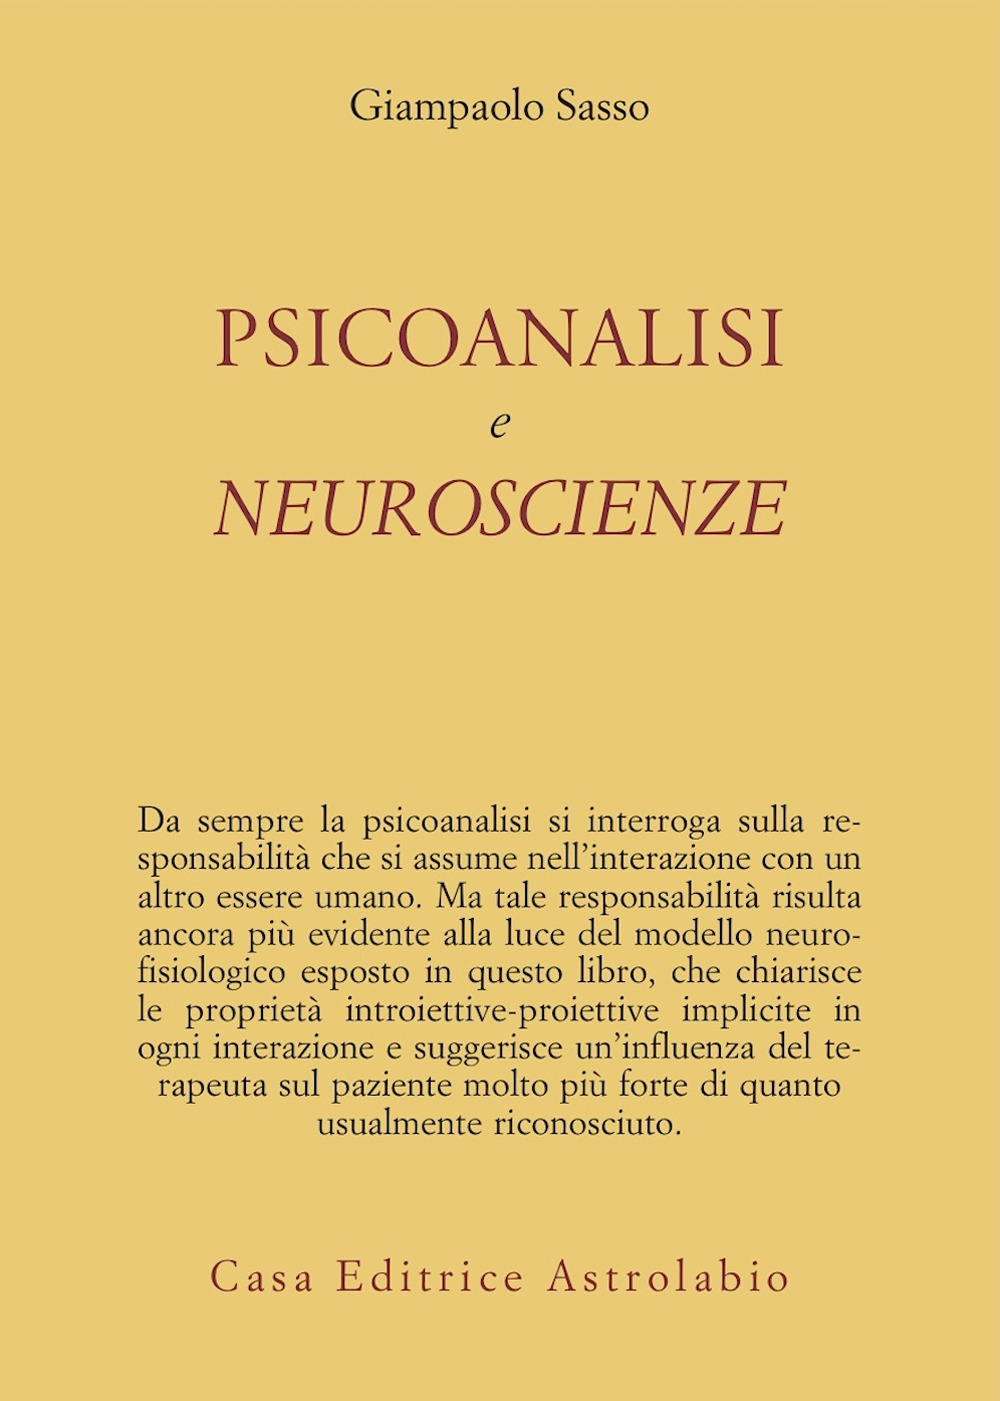 Psicoanalisi e neuroscienze